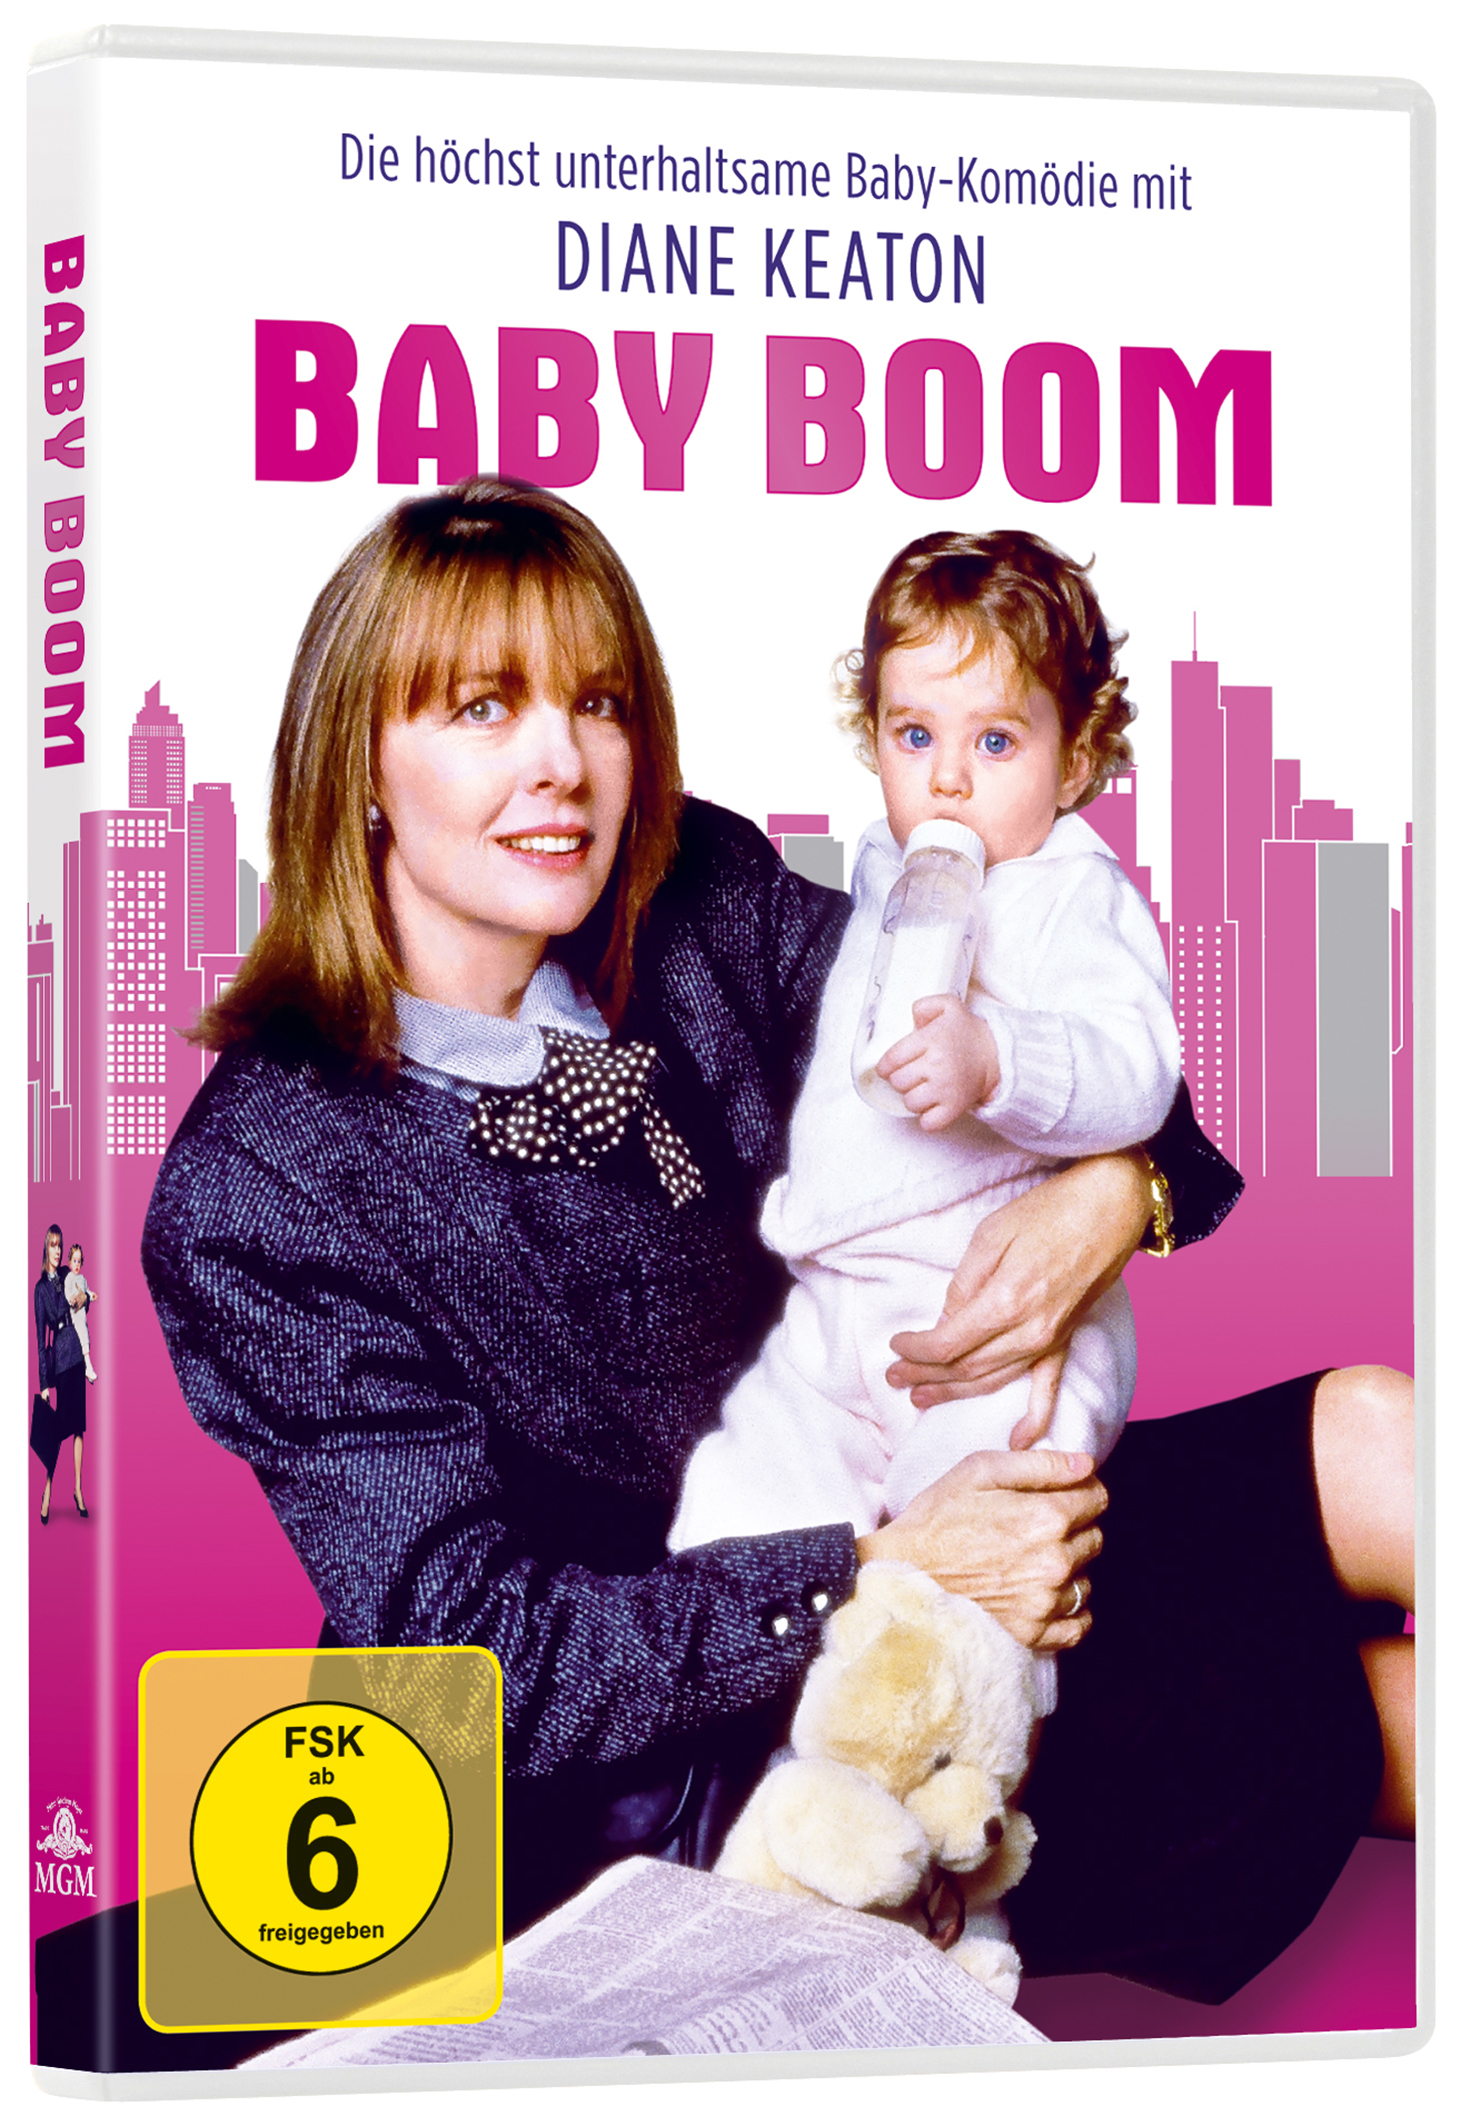 Bescherung Baby Boom Eine DVD schöne -